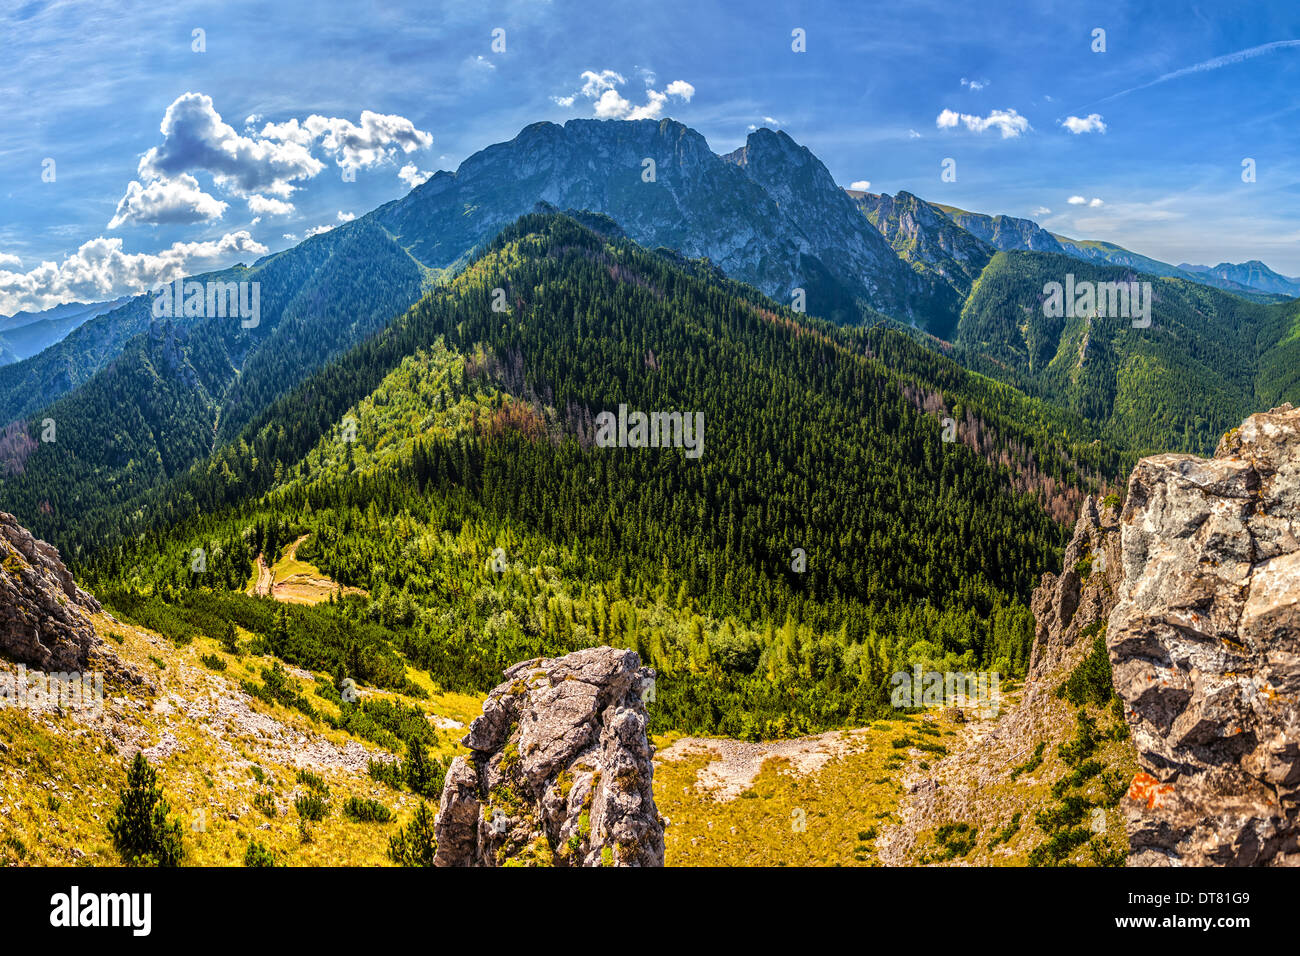 Tatra mountains in Poland Stock Photo